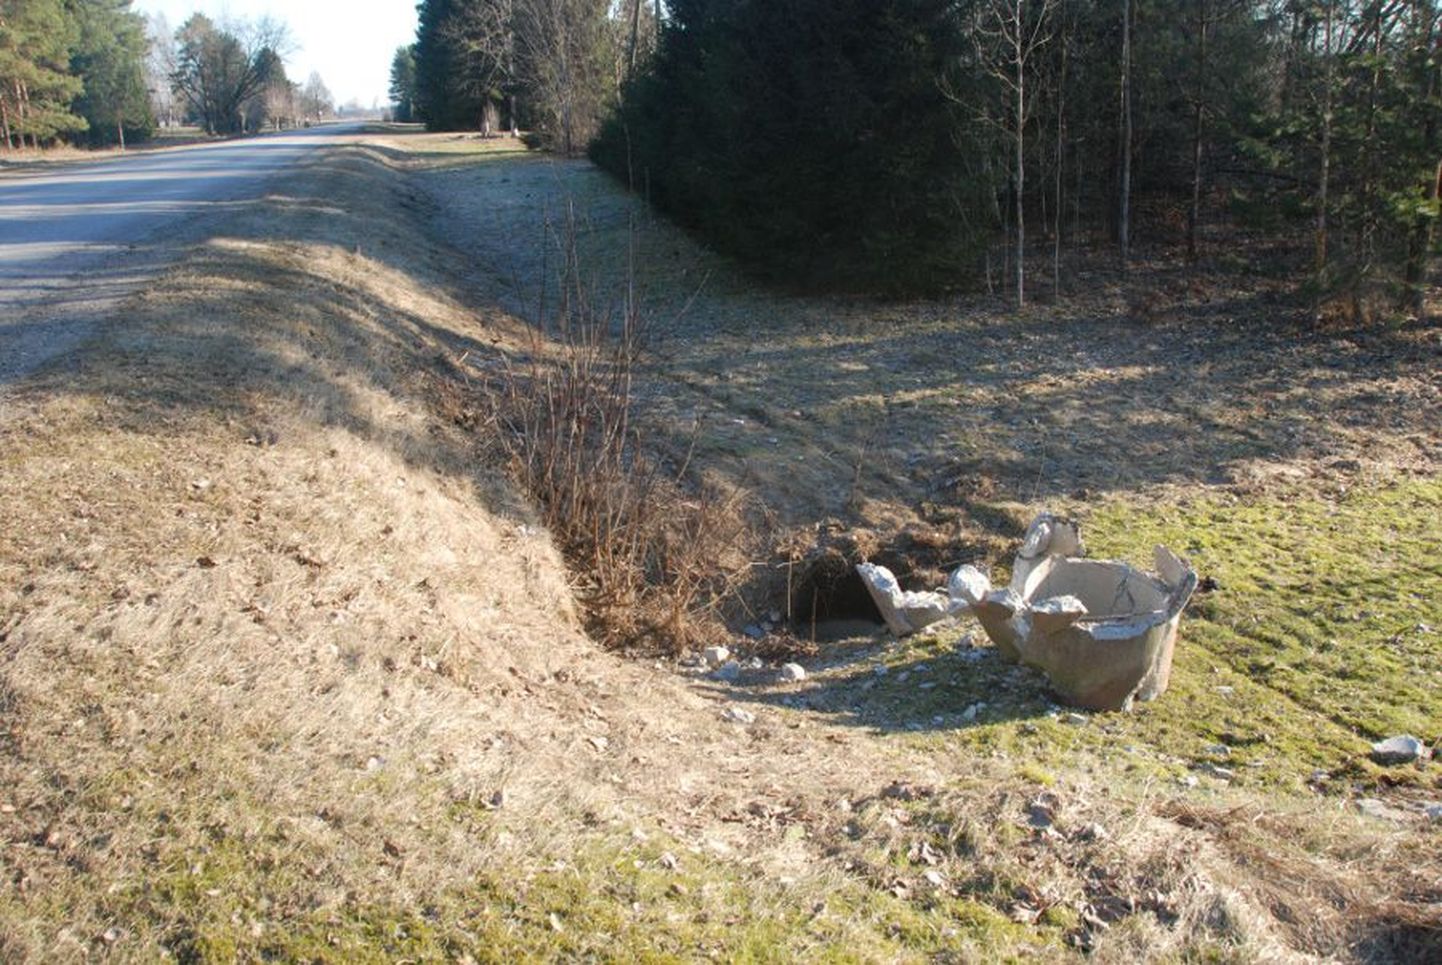 Aovere-Kallaste-Omedu maanteelt välja sõitnud auto purustas teeäärse truubi. Avarii järel selle põhjustaja lahkus.